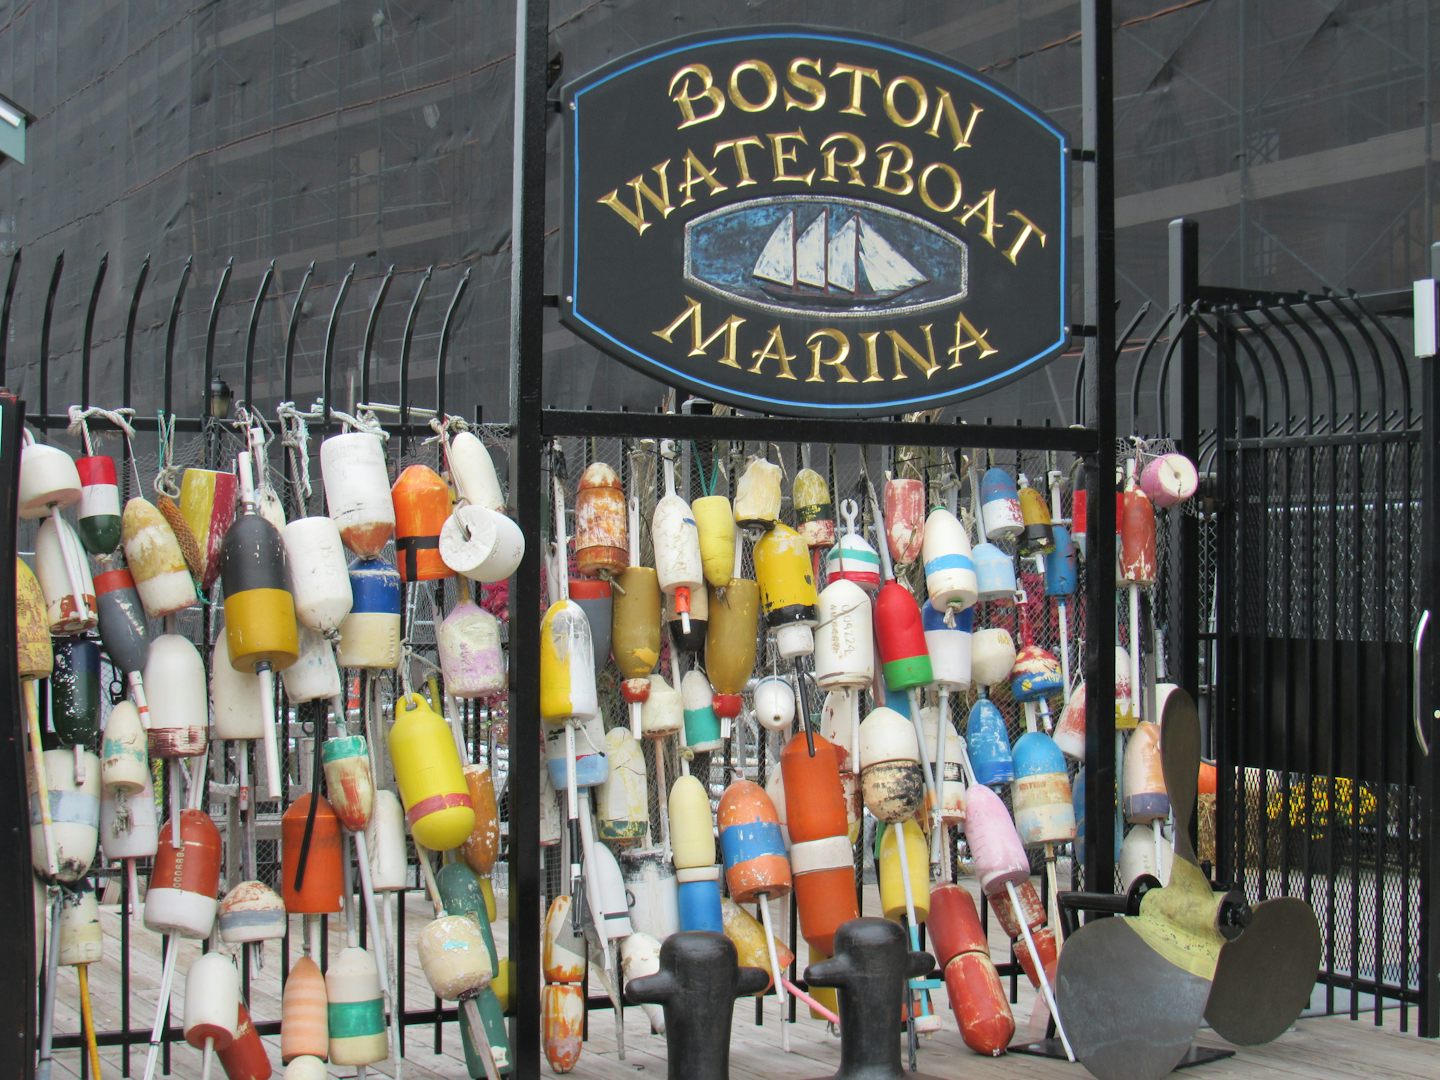 Entrance to Boston Waterfront in Boston